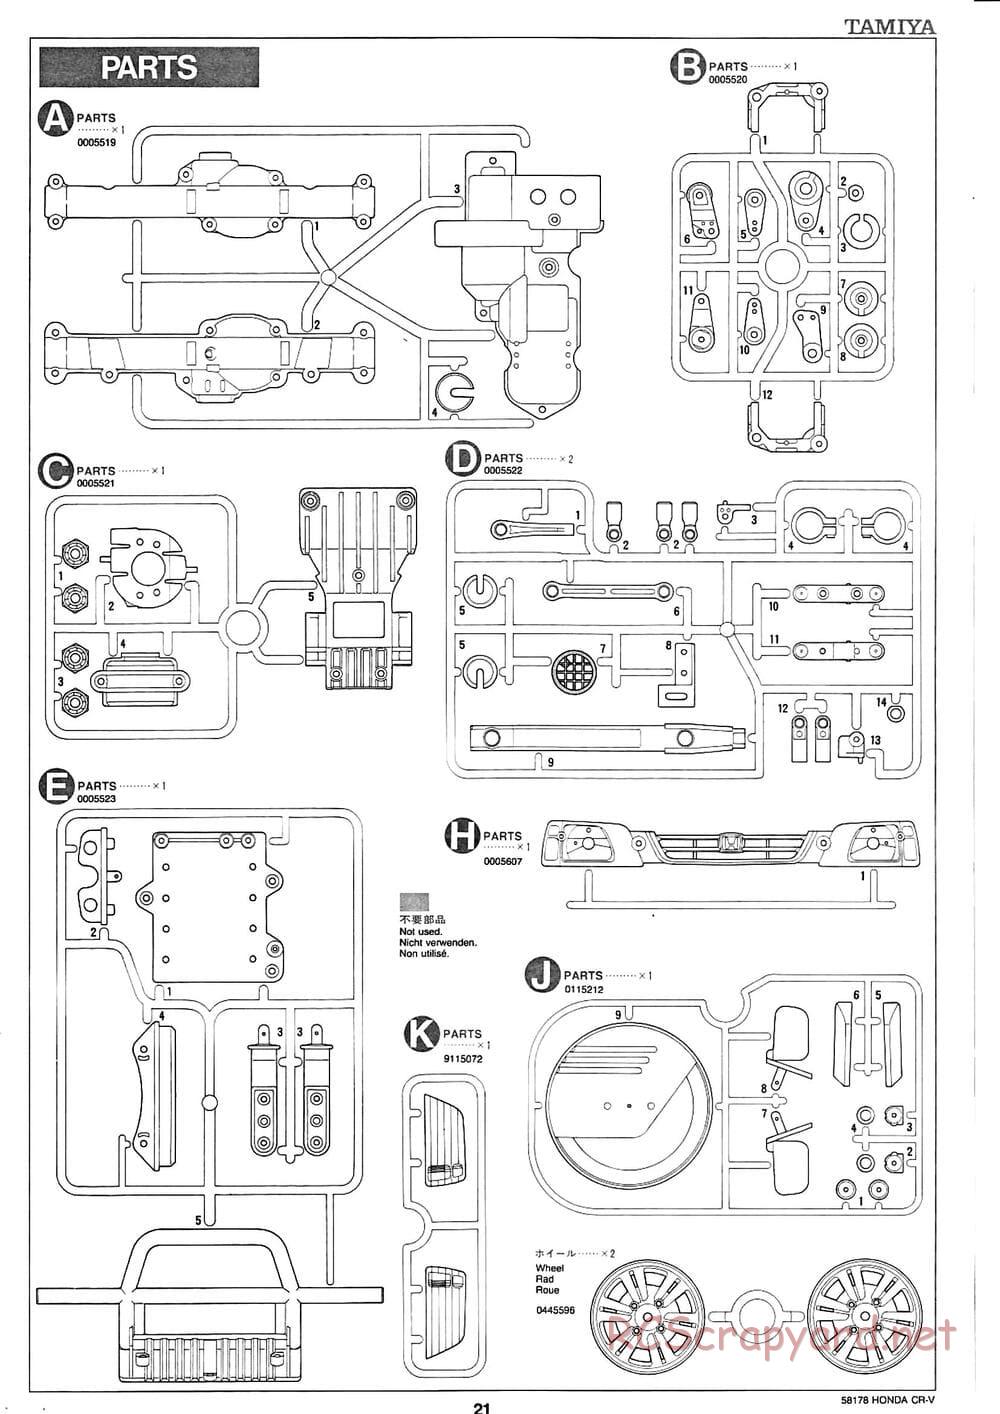 Tamiya - Honda CR-V - CC-01 Chassis - Manual - Page 21